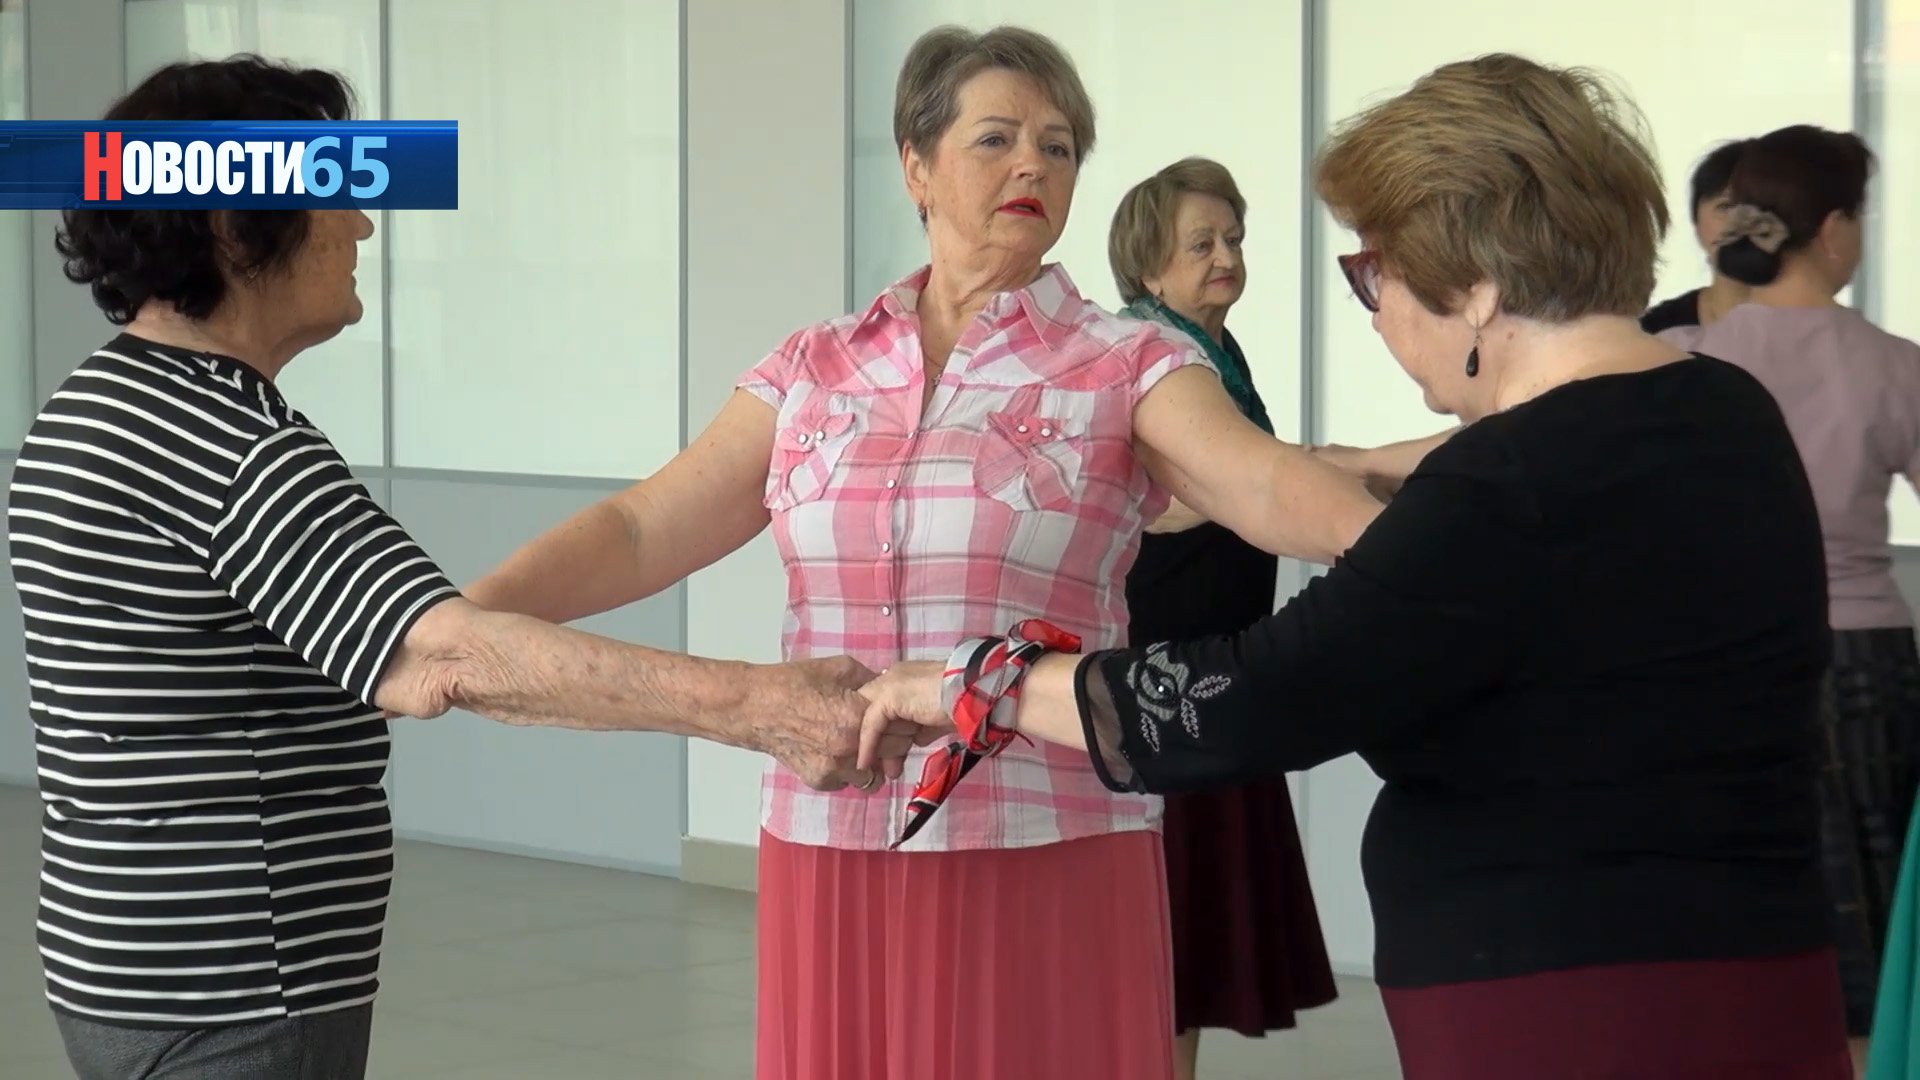 Возраст танцам не помеха. В Южно-Сахалинске более 70 пенсионеров занимаются бальными танцами